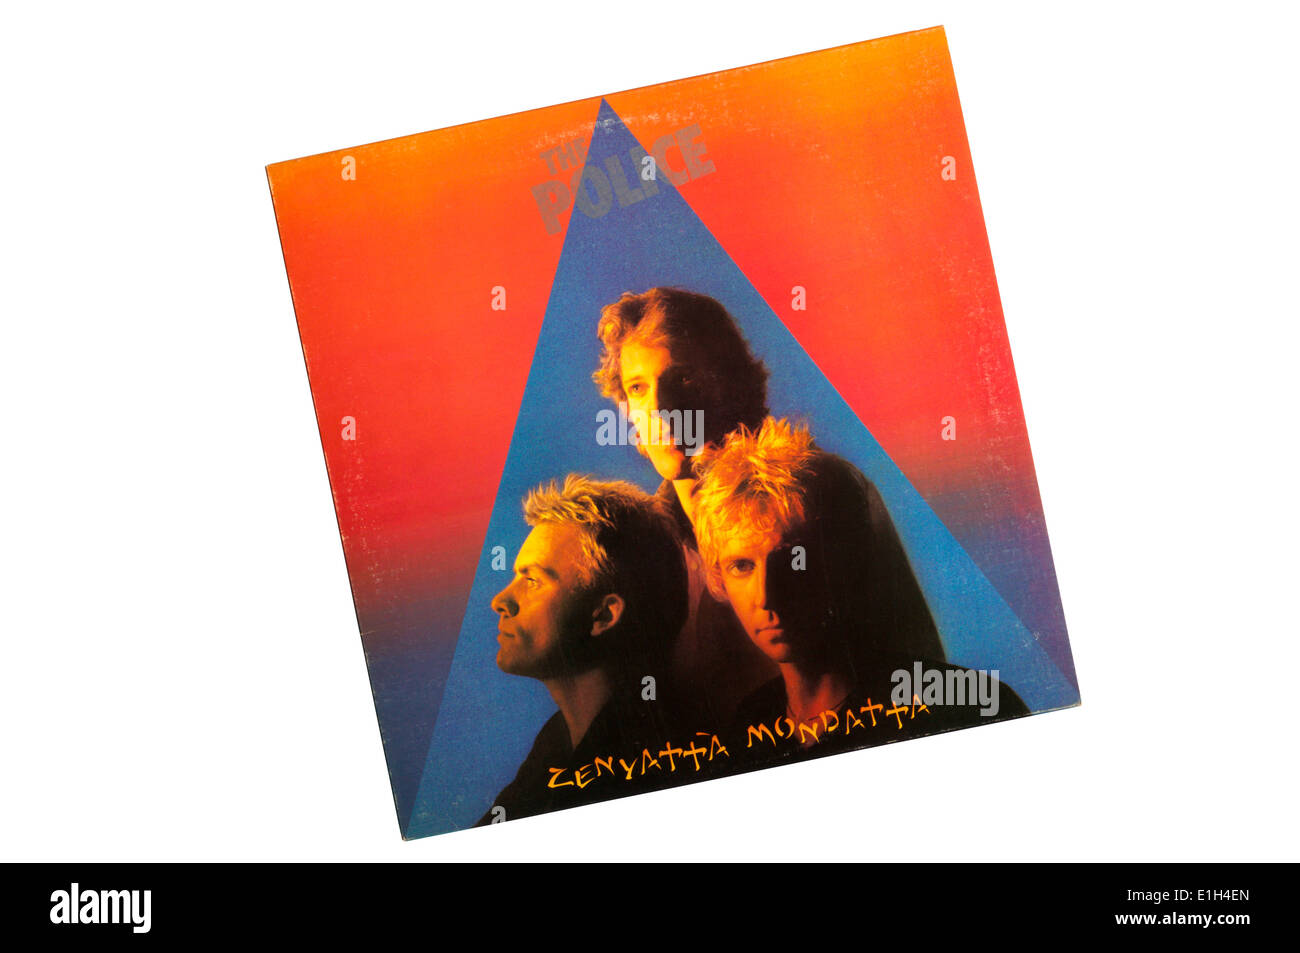 Zenyatta Mondatta è stato il terzo album dalla polizia, rilasciato nel 1980. Foto Stock